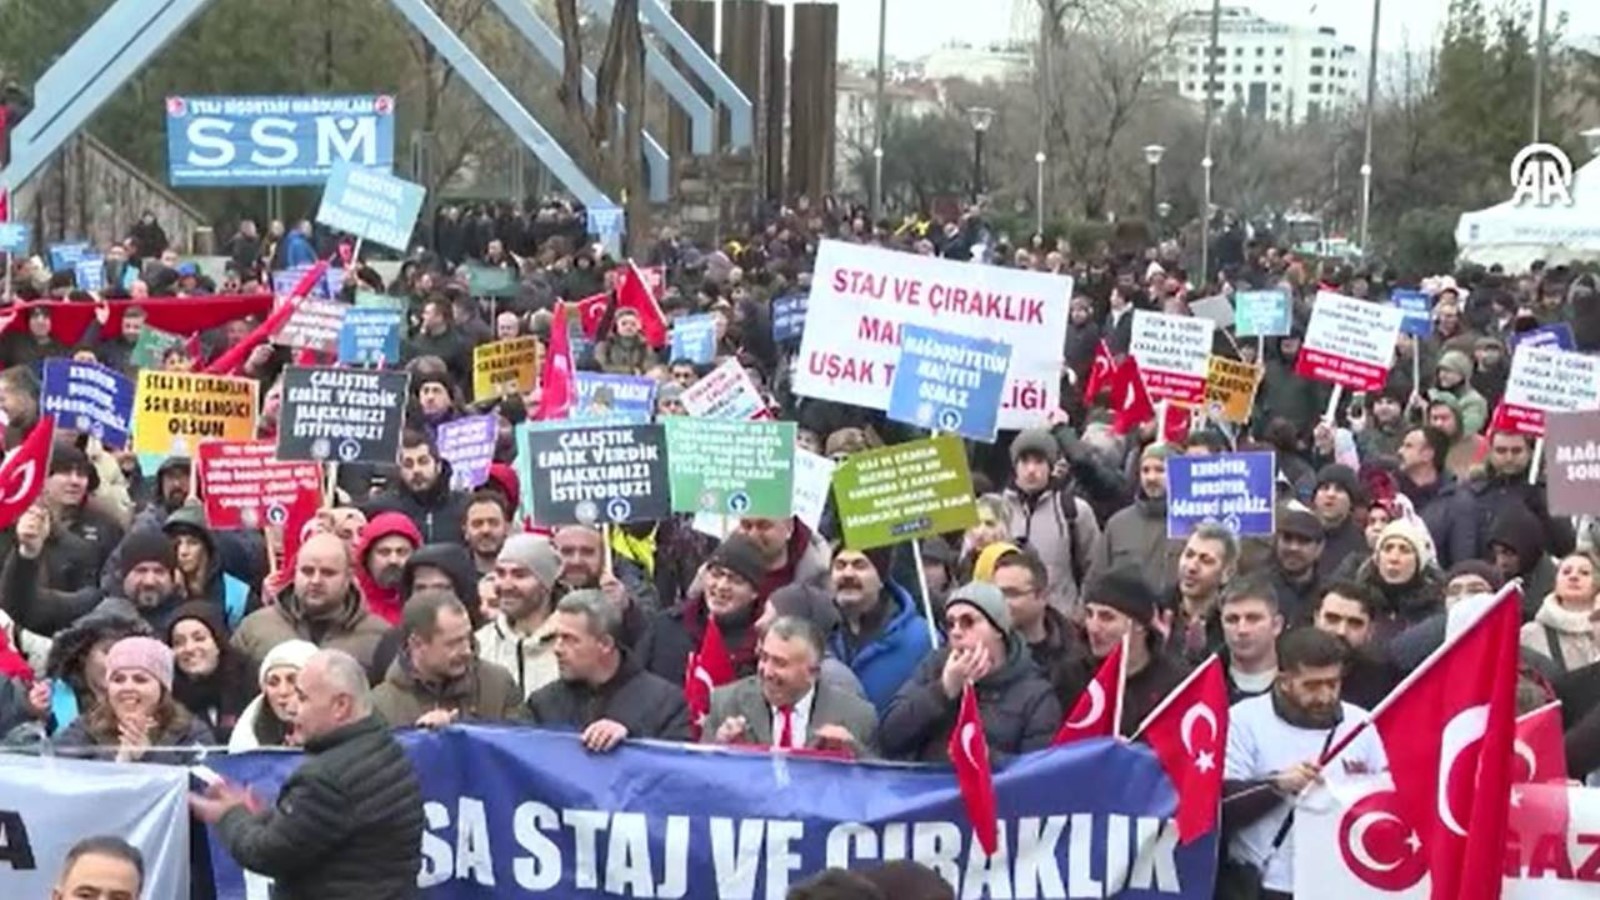 Emeklilikte staj ve çıraklık mağdurlarından Ankara'da miting